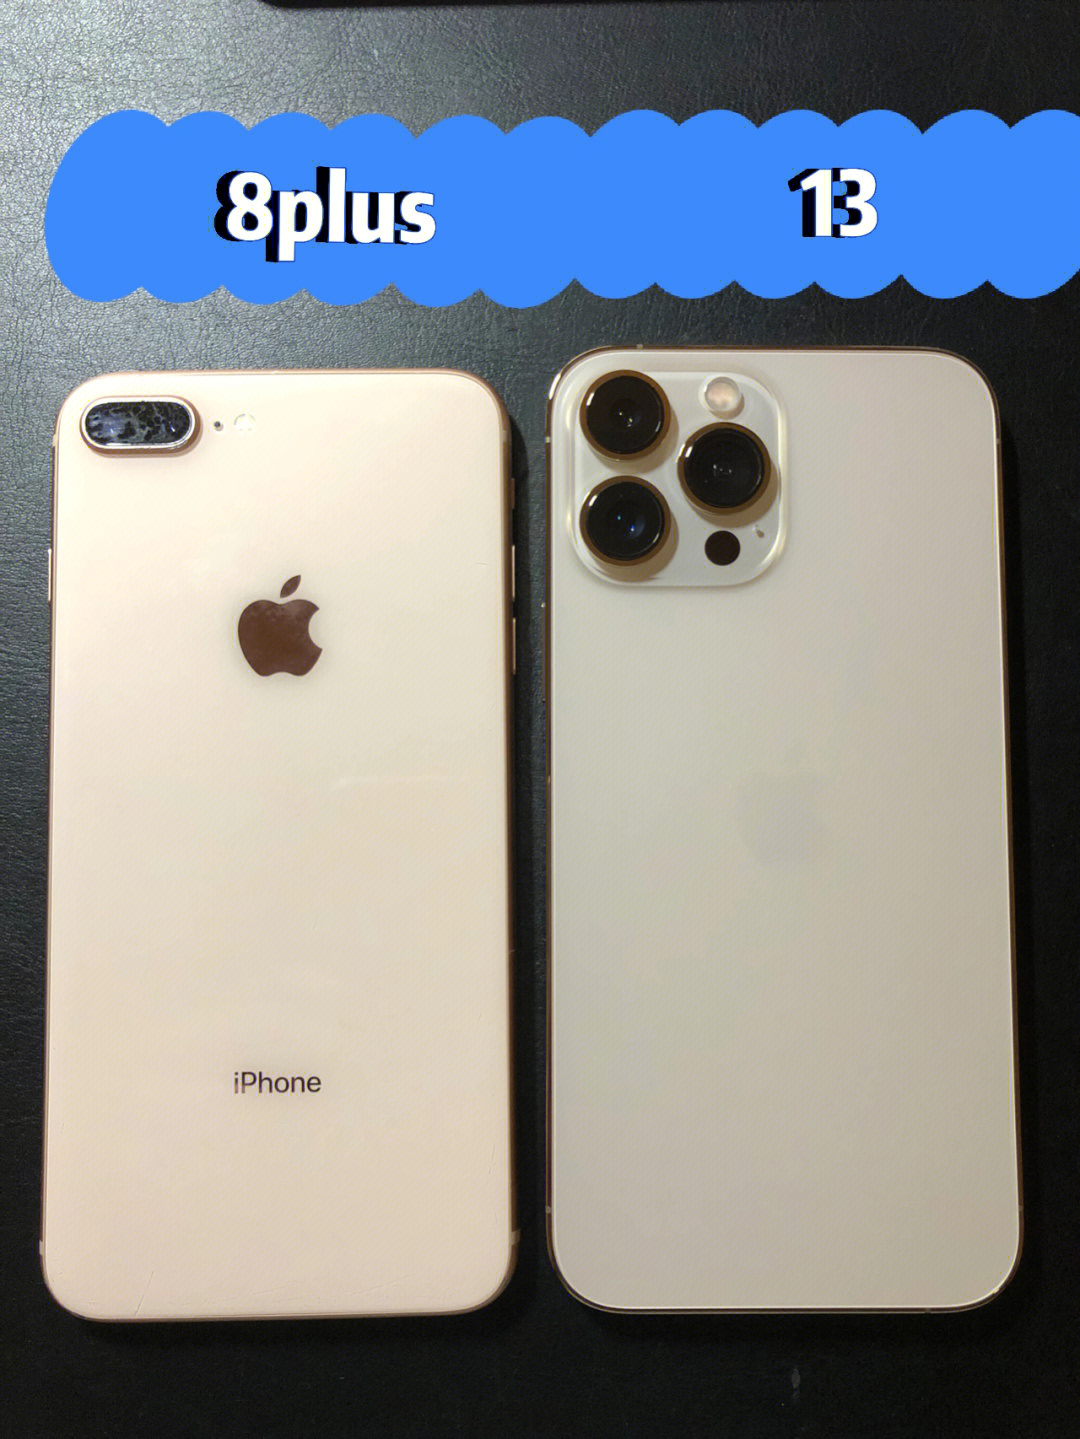 iphone 8plus vs 13promax